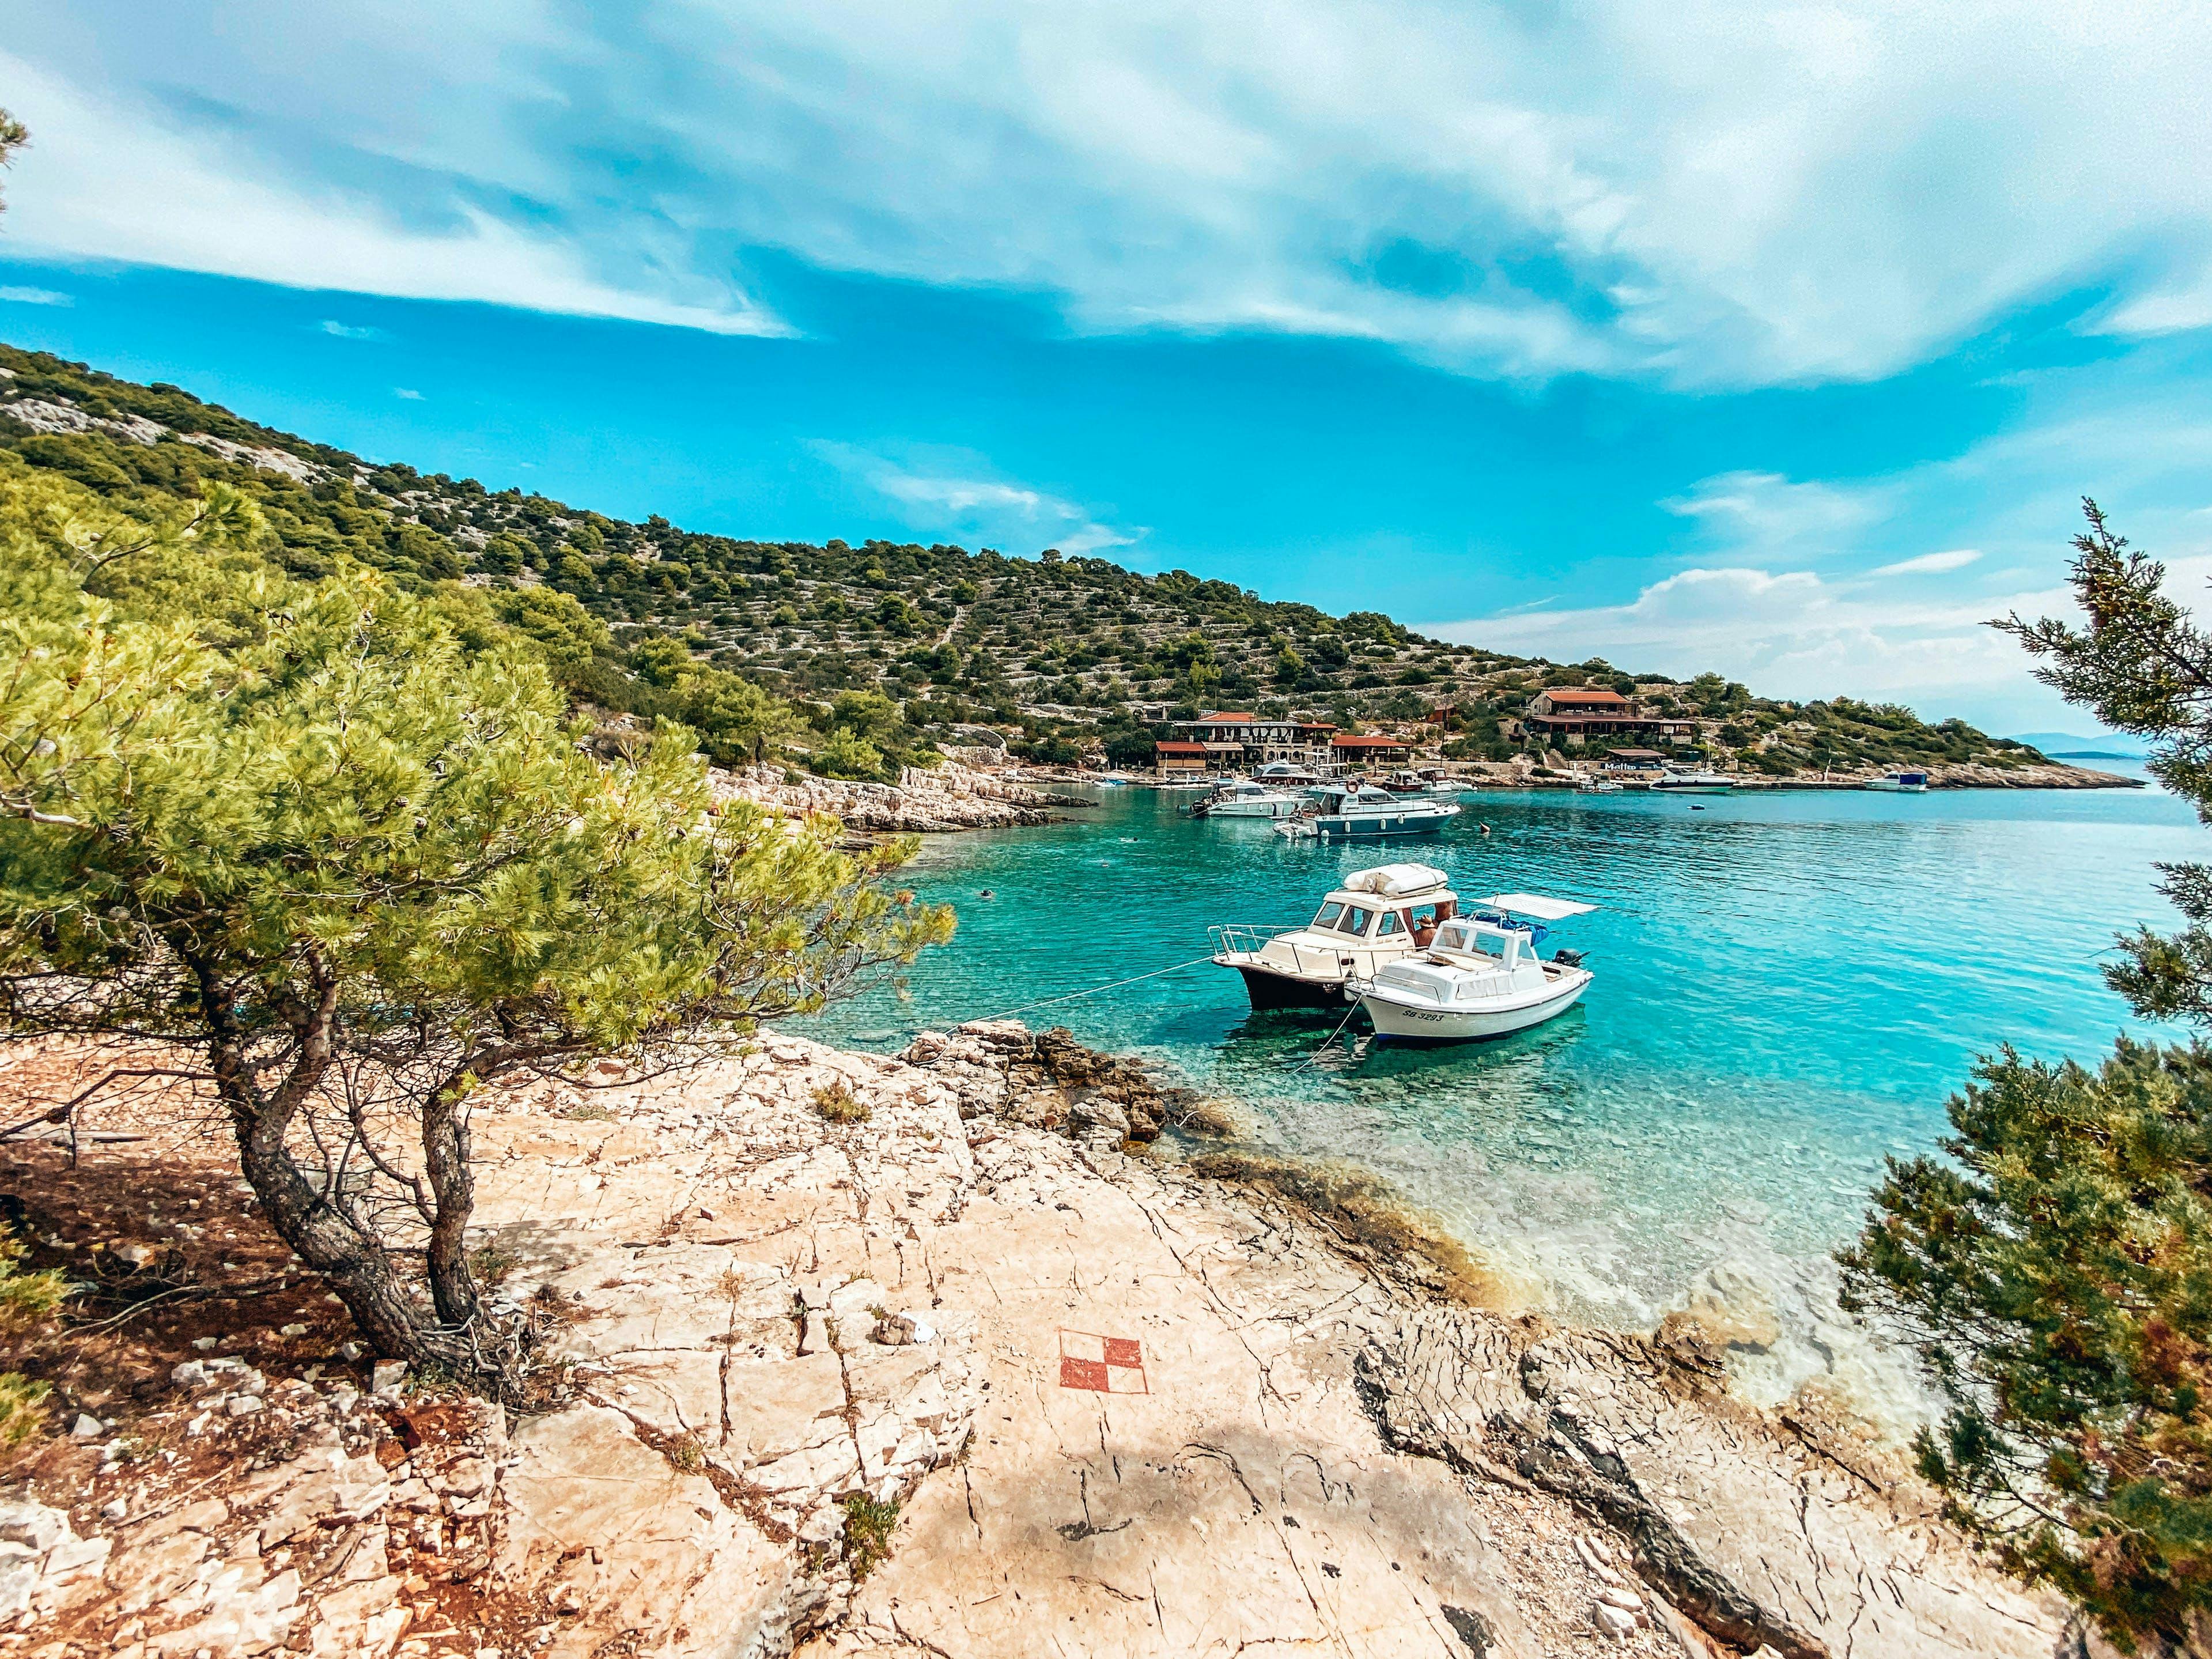 Tour des îles en bateau rapide sur l'archipel de Šibenik